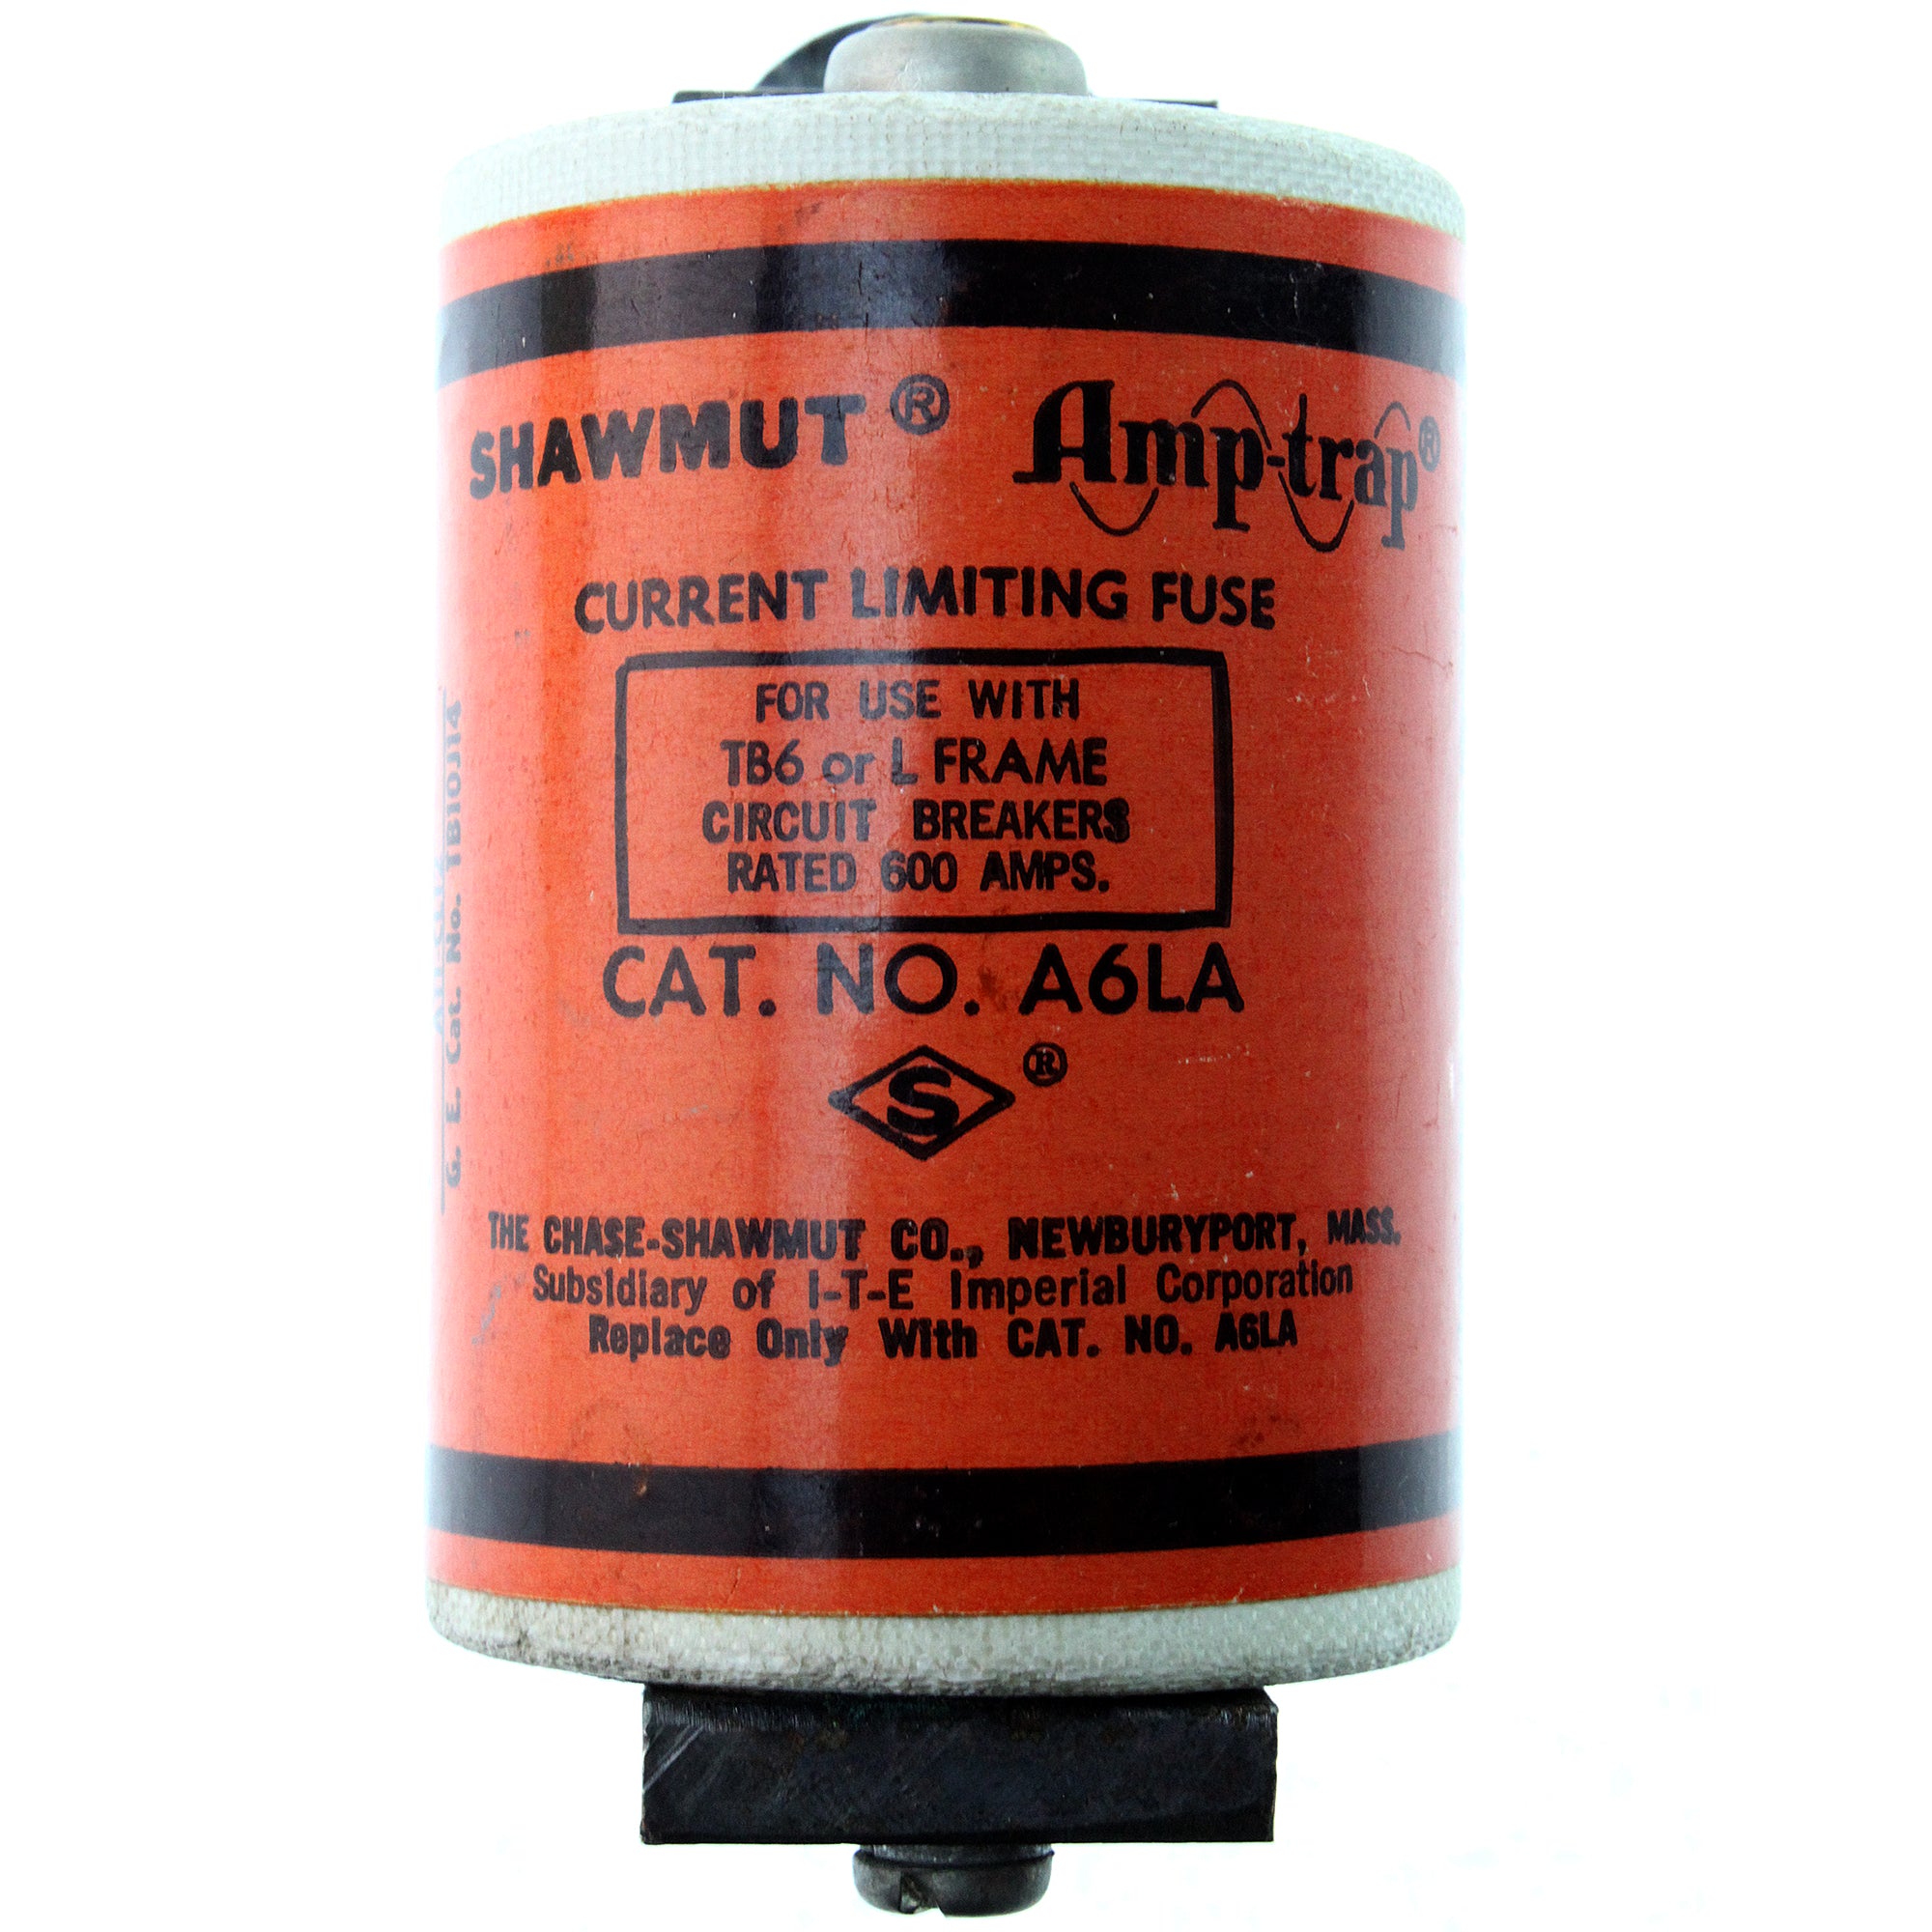 Shawmut Amp-Trap, FERRAZ SHAWMUT A6LA AMP-TRAP CURRENT LIMITING FUSE, 600-AMP, TB6 OR L FRAME